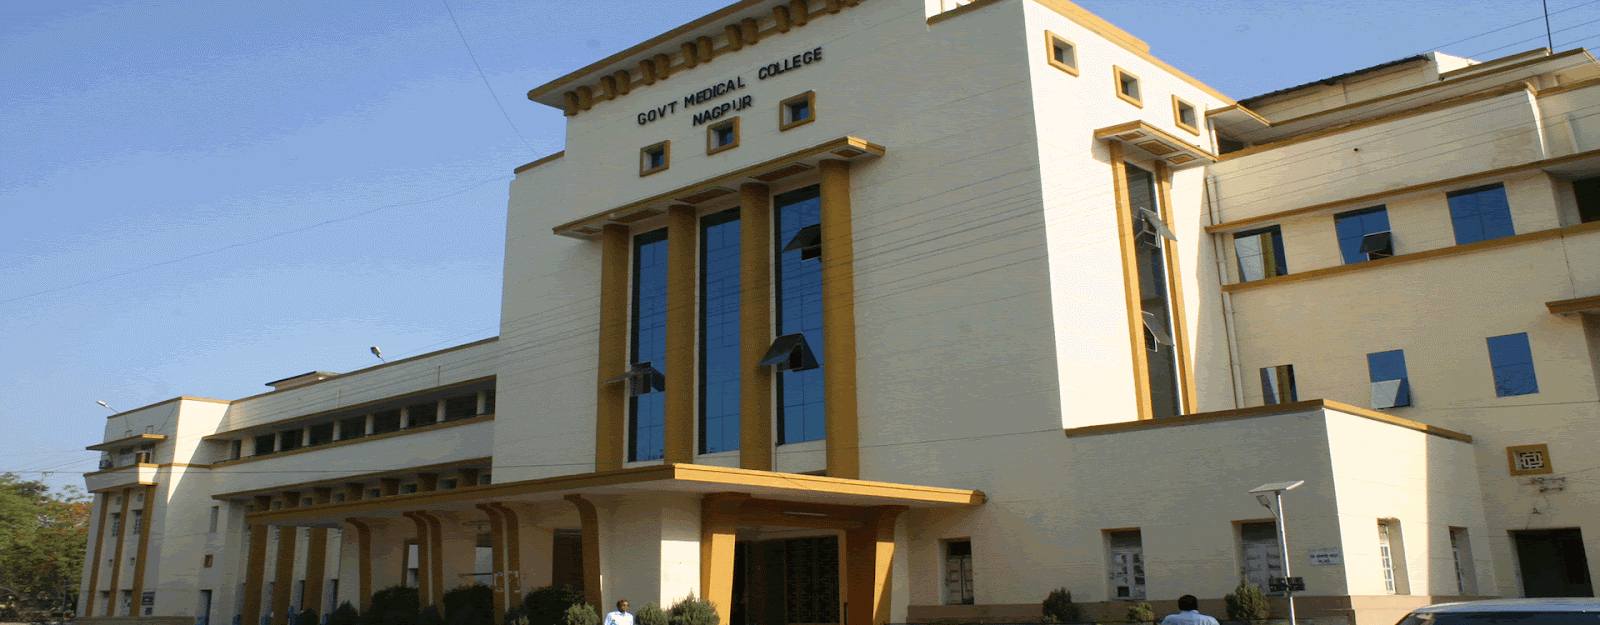 Govt Medical College Nagpur